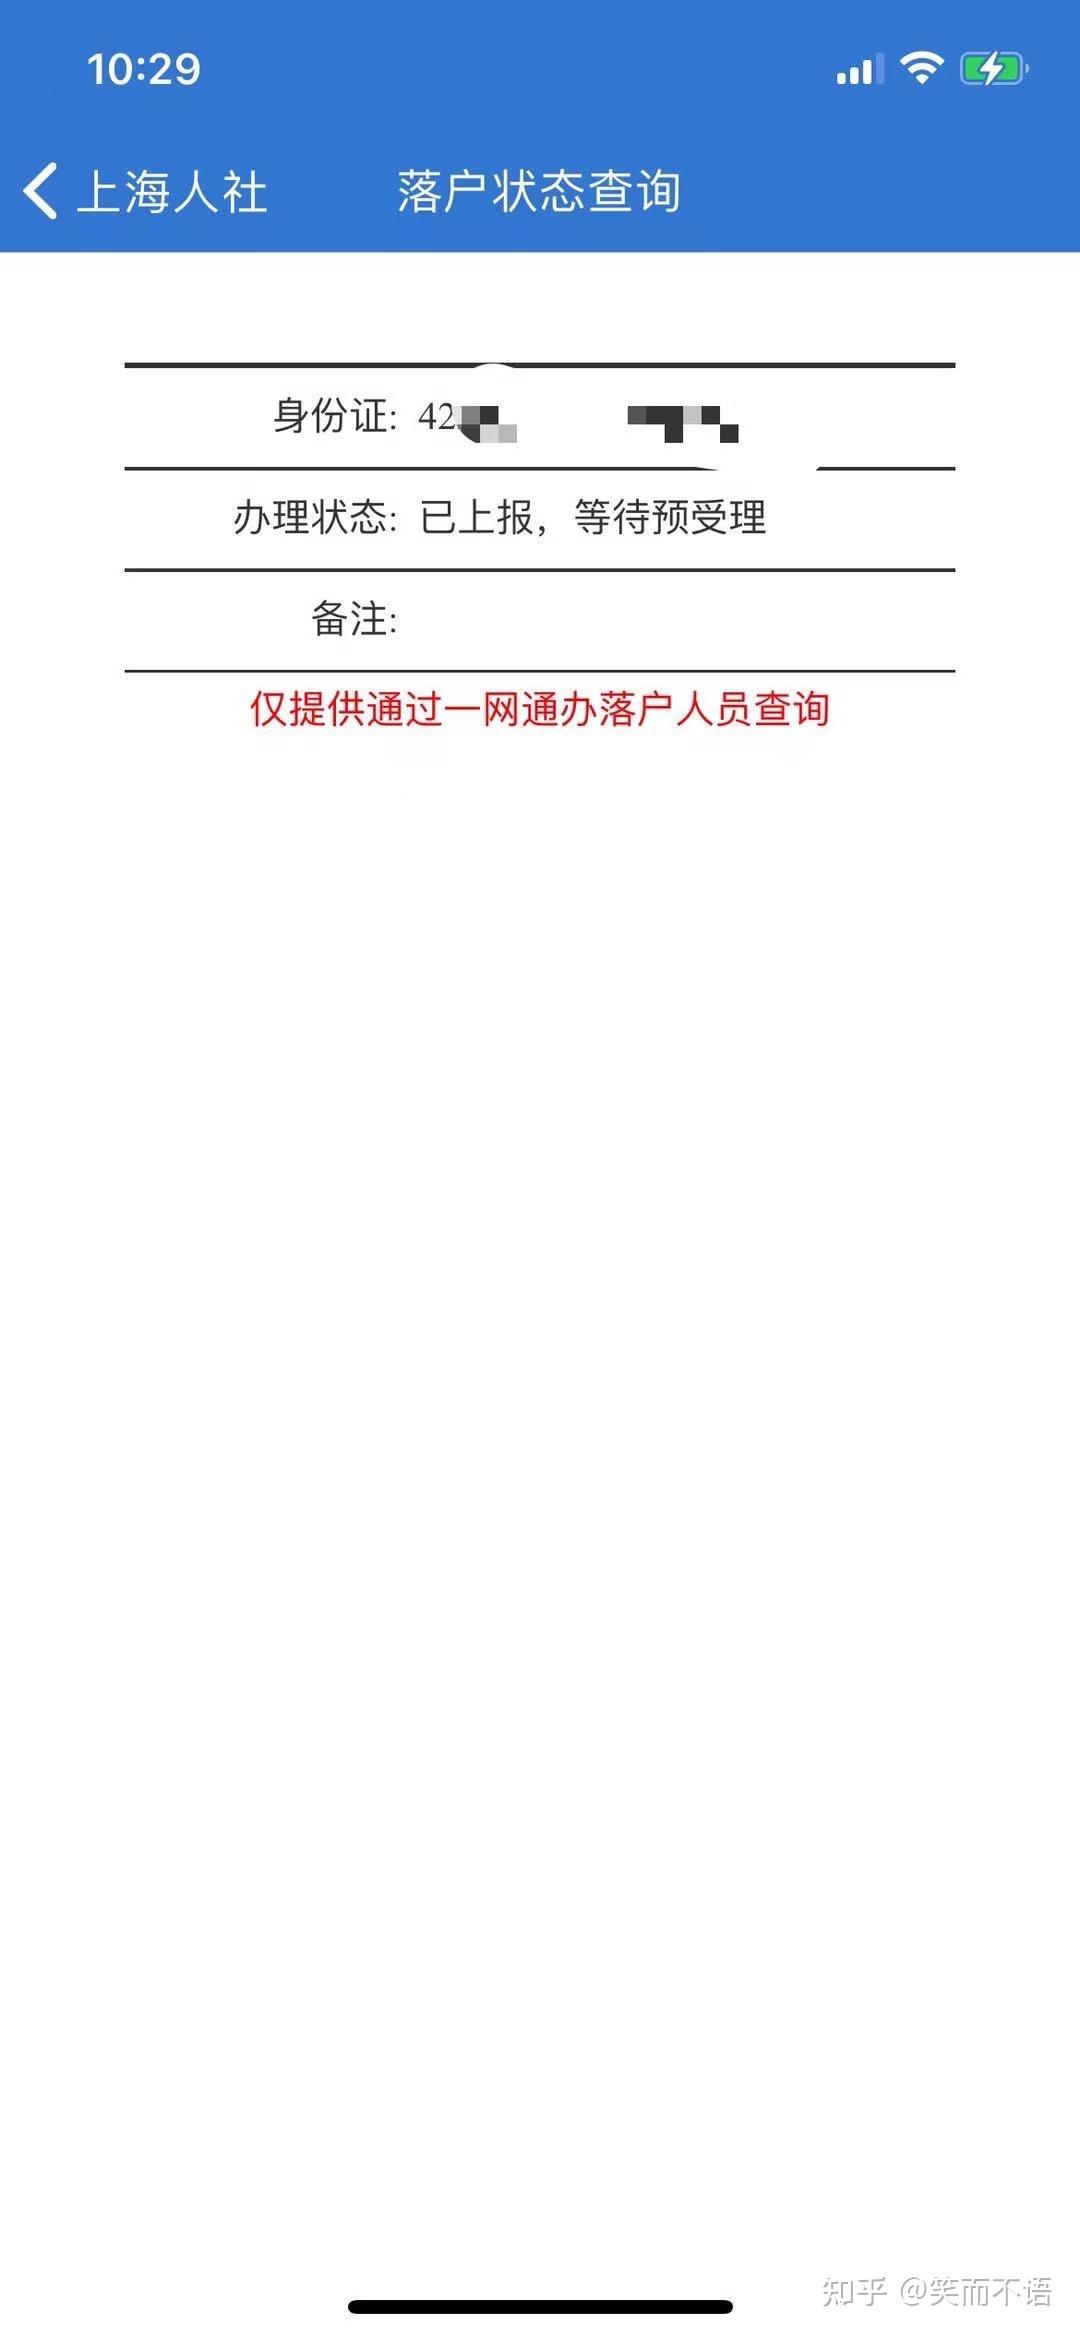 2021.6.30号上海落户申请状态更新！